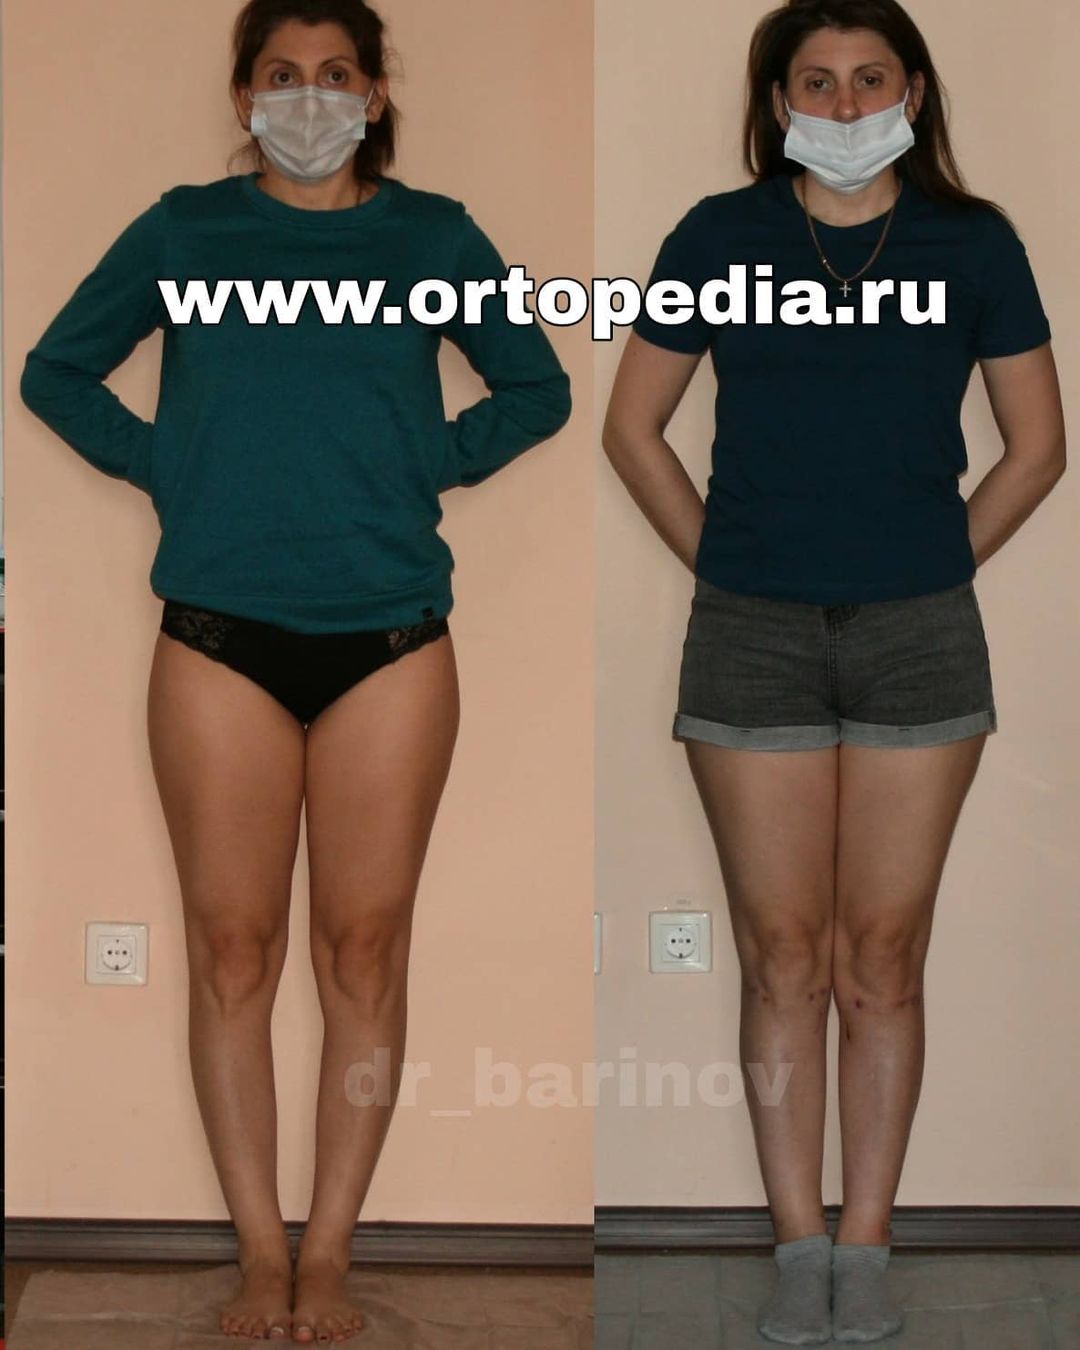 Результат исправления О-образной формы голеней в Волгограде